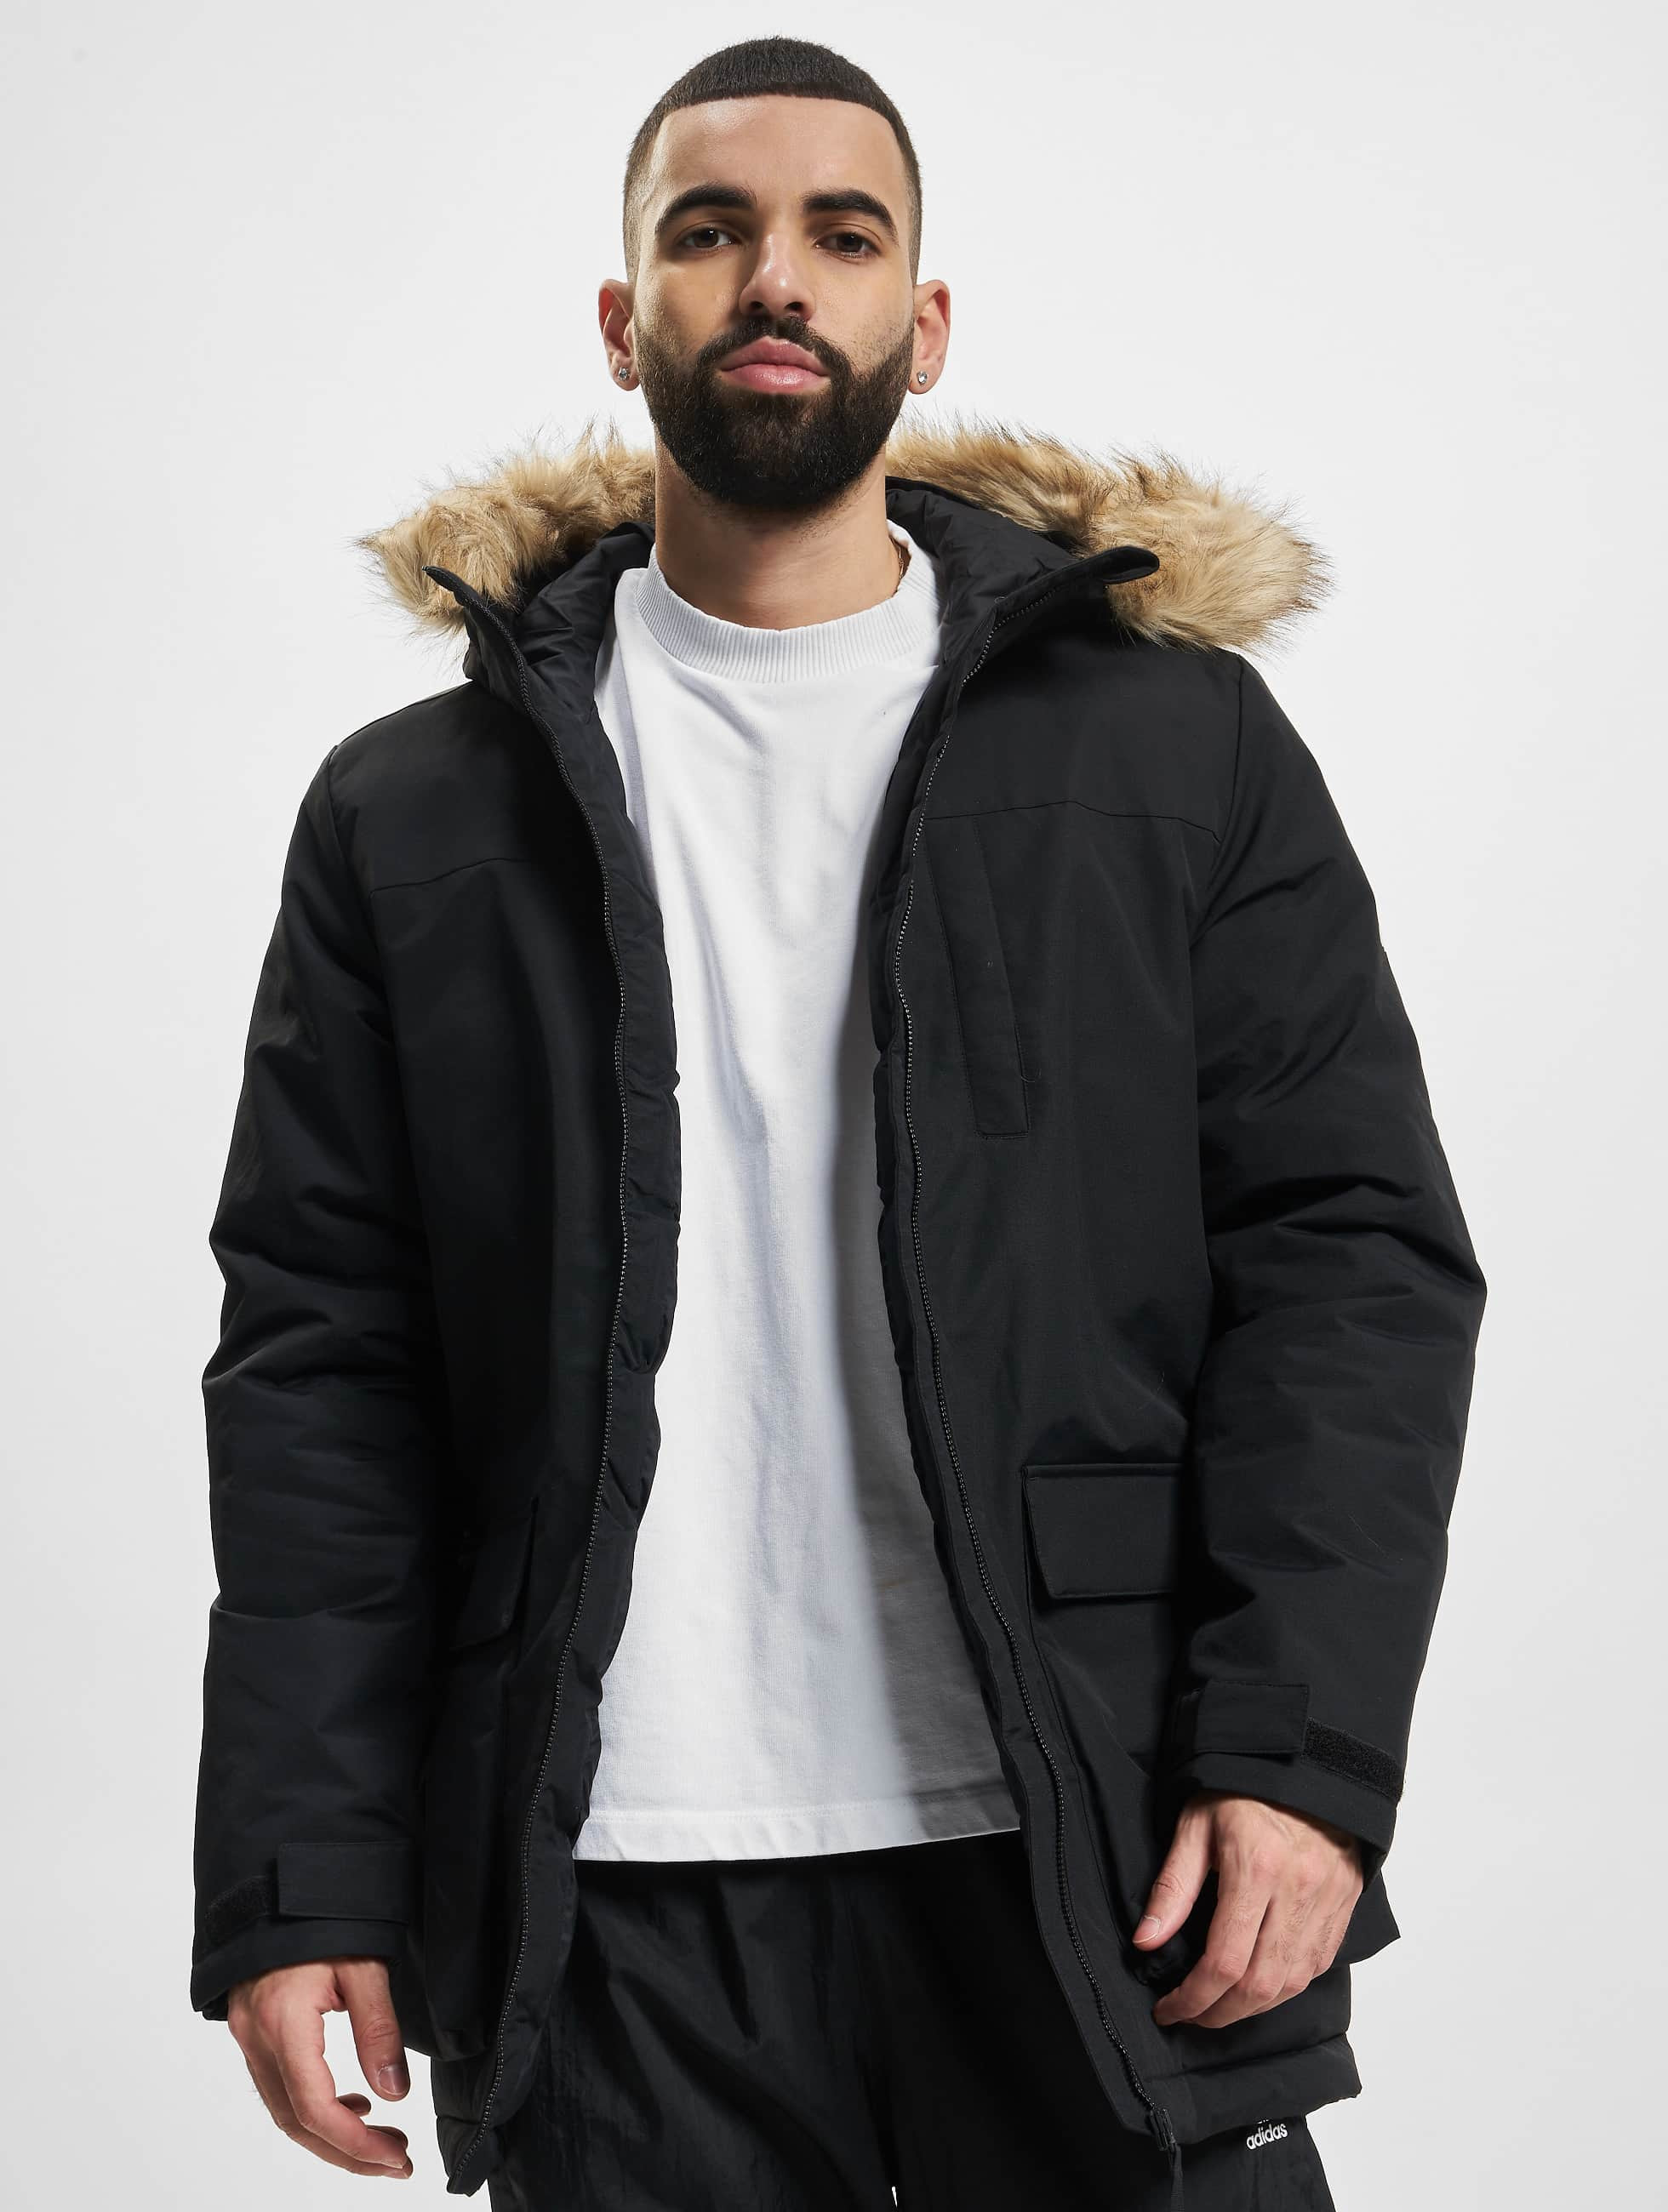 Begeleiden vroegrijp Ongrijpbaar adidas Originals jas / Parka Hooded in zwart 940537